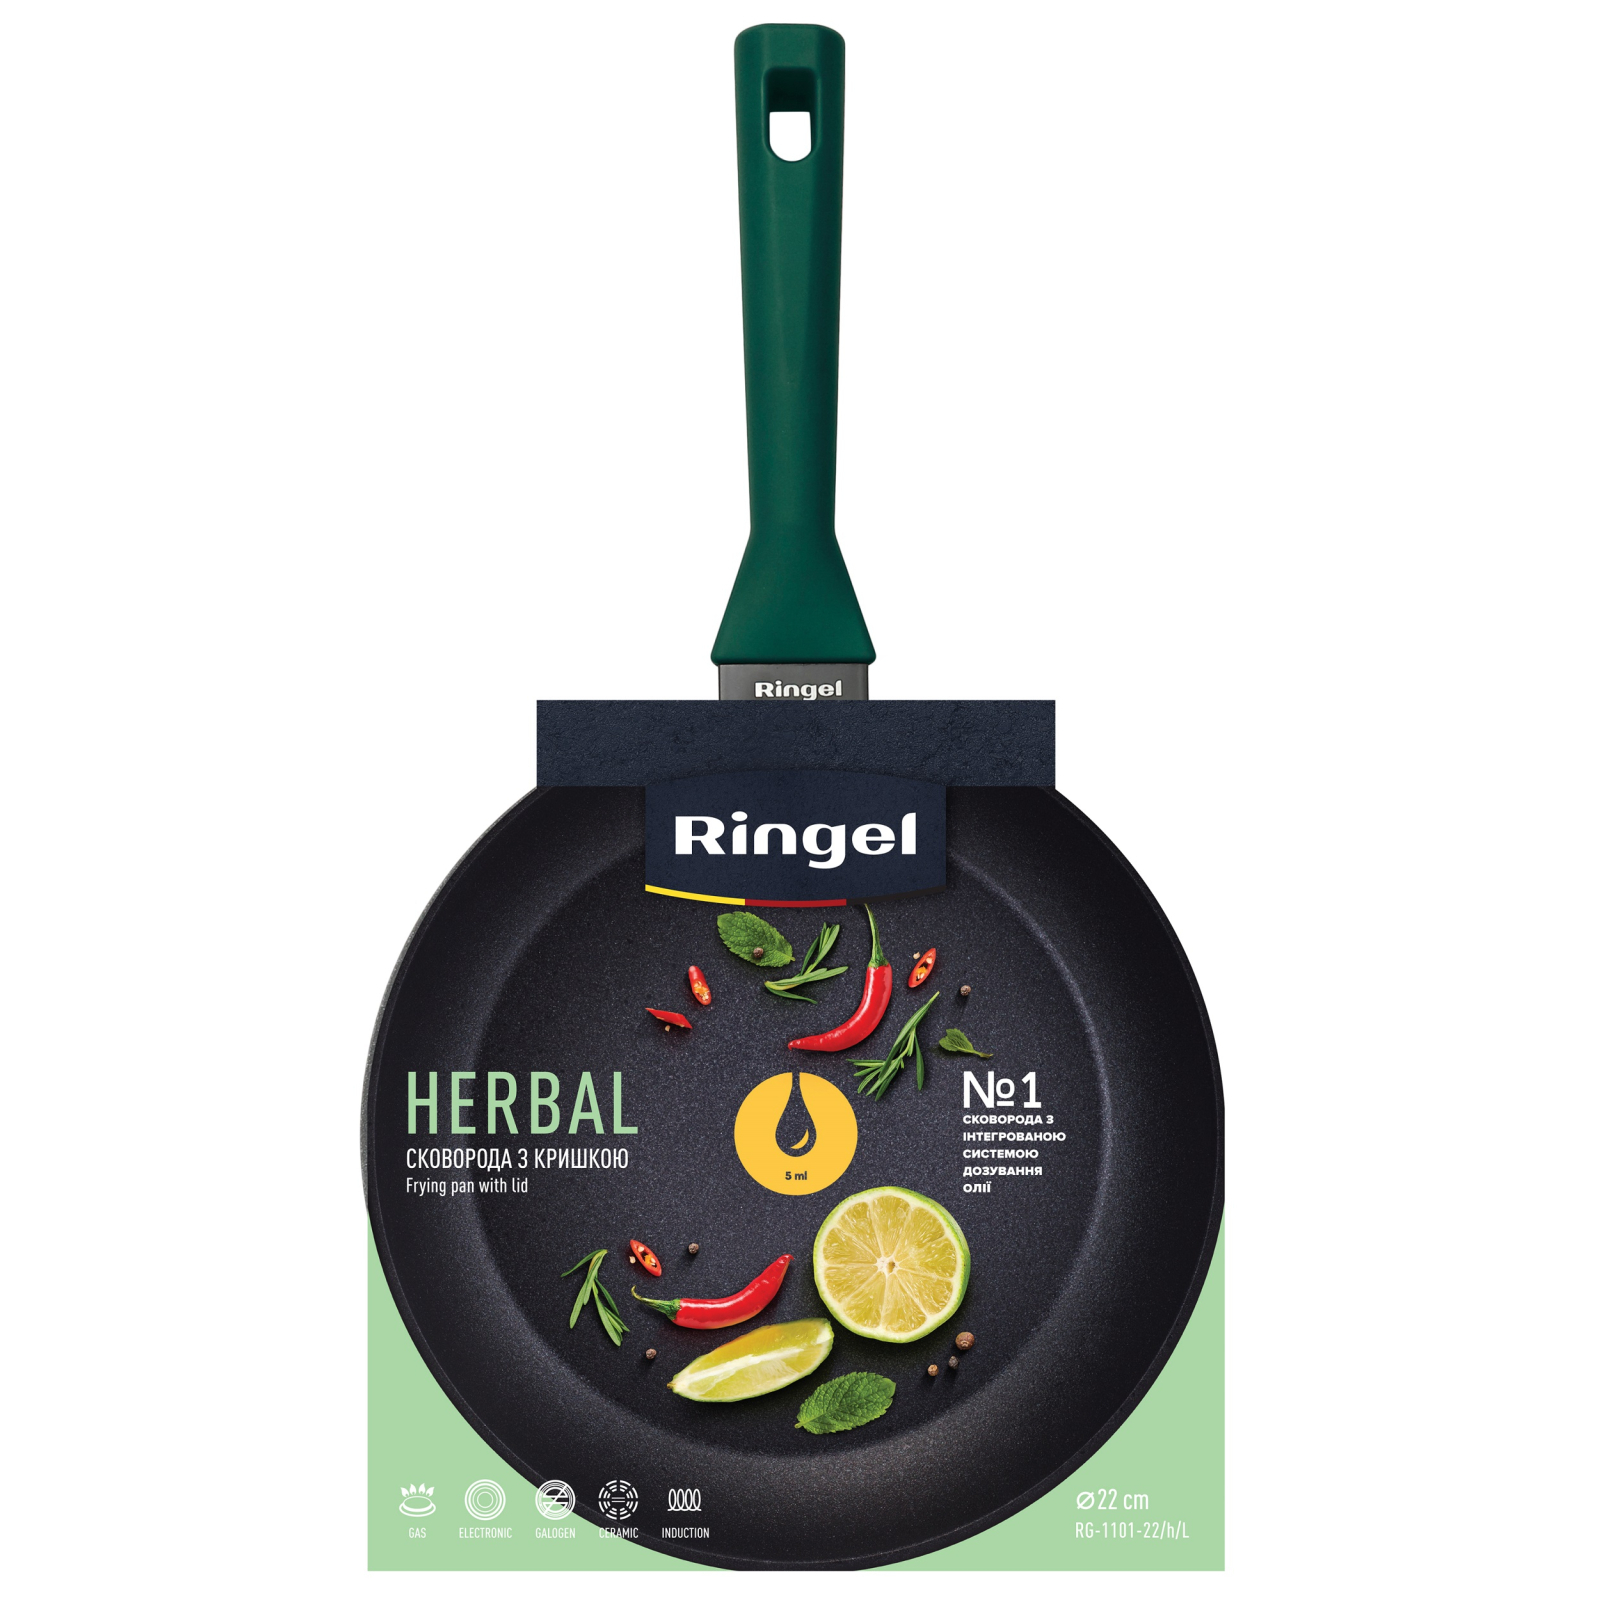 Сковорода Ringel Herbal 28 см (RG-1101-28/h/L) изображение 2